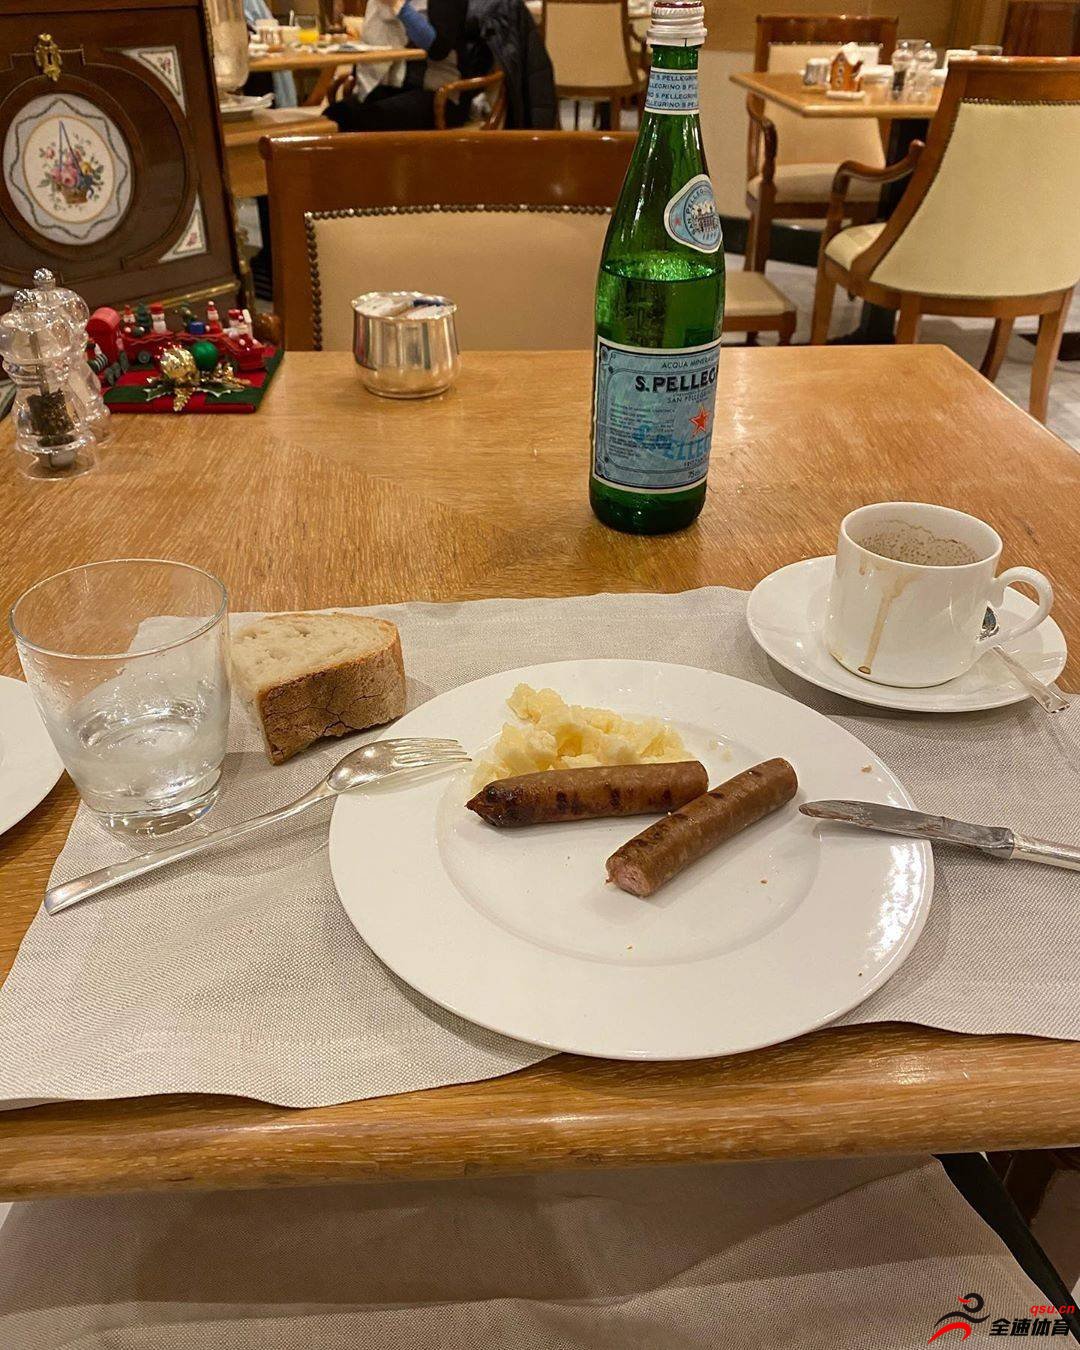 王大雷发布了自己在罗马享用早餐的照片